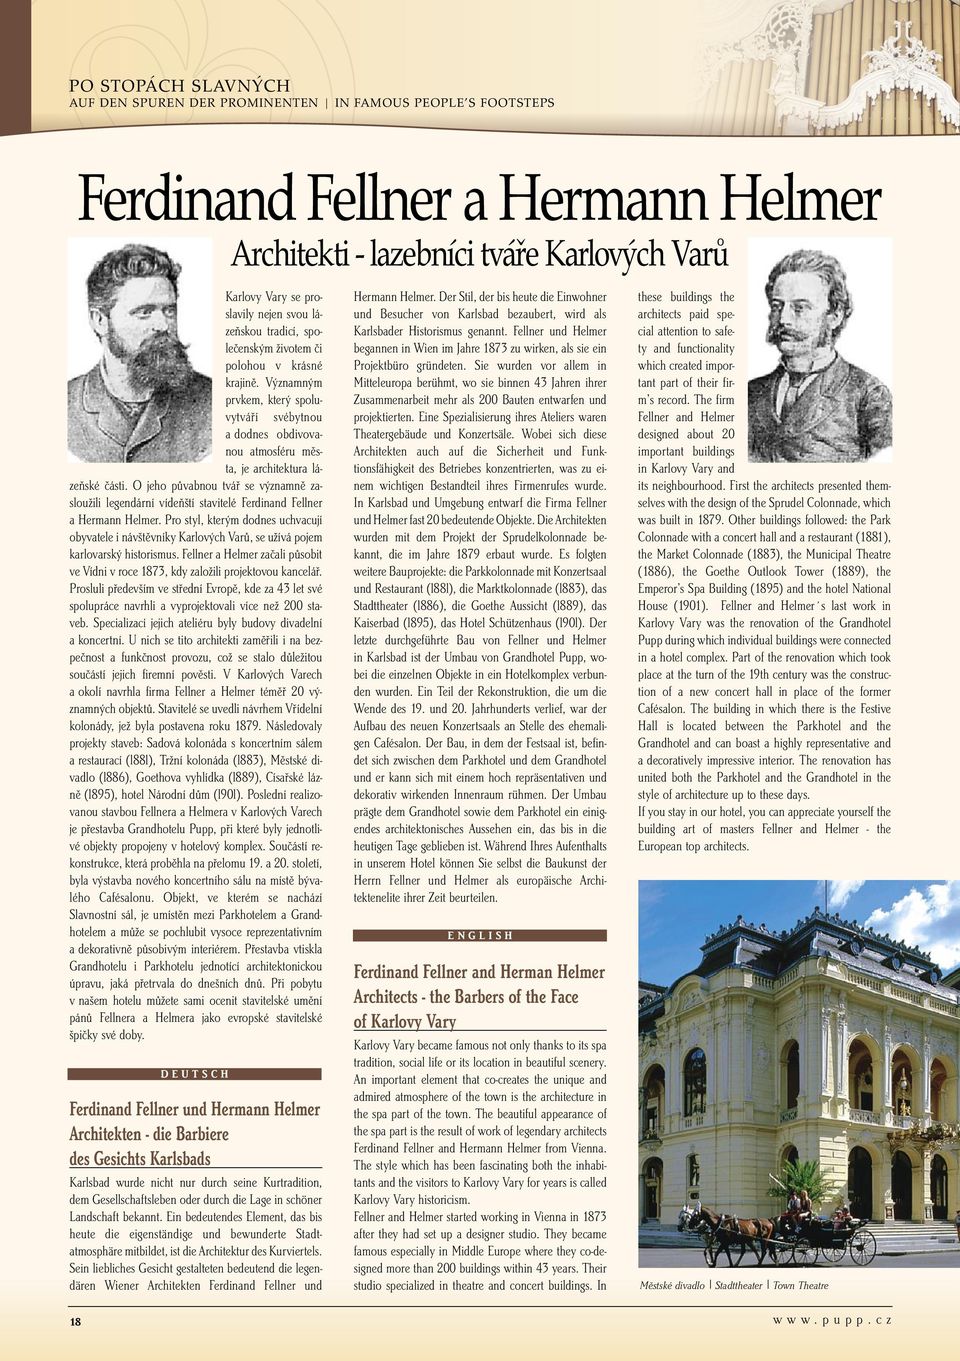 O jeho půvabnou tvář se významně zasloužili legendární vídeňští stavitelé Ferdinand Fellner a Hermann Helmer.